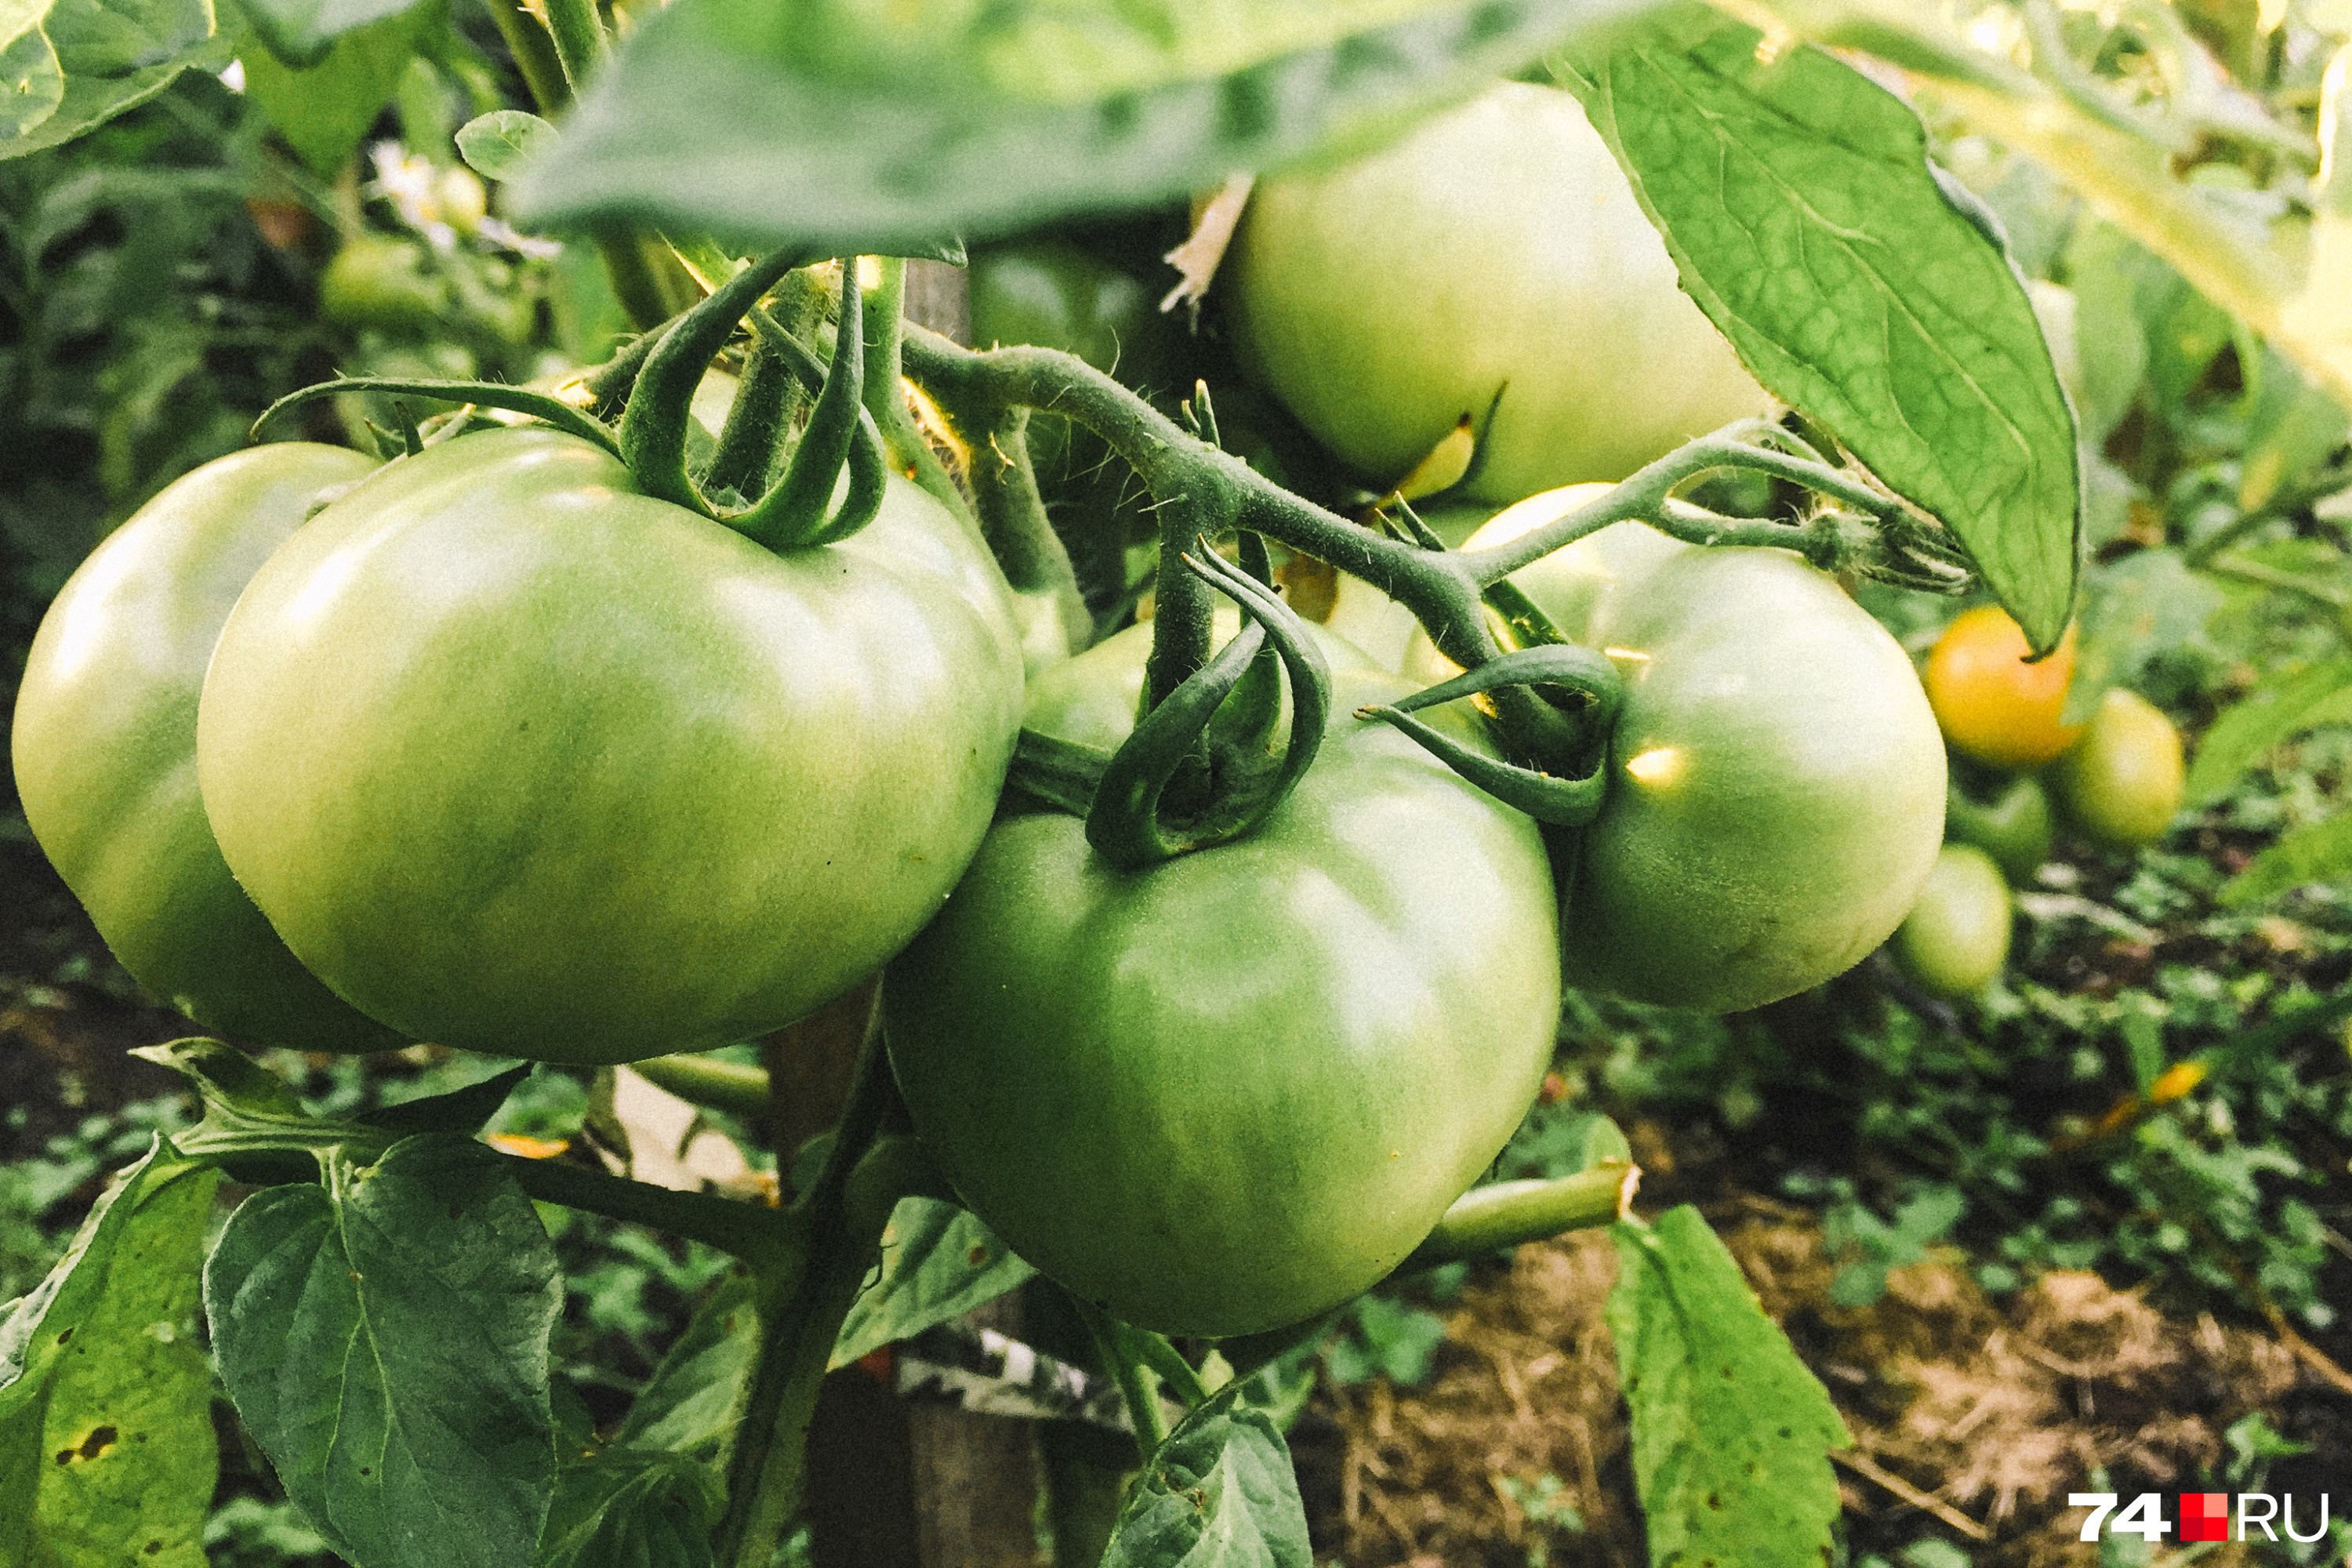 Как правильно выращивать помидоры, самые распространенные болезни томатов -22 июля 2021 - НГС